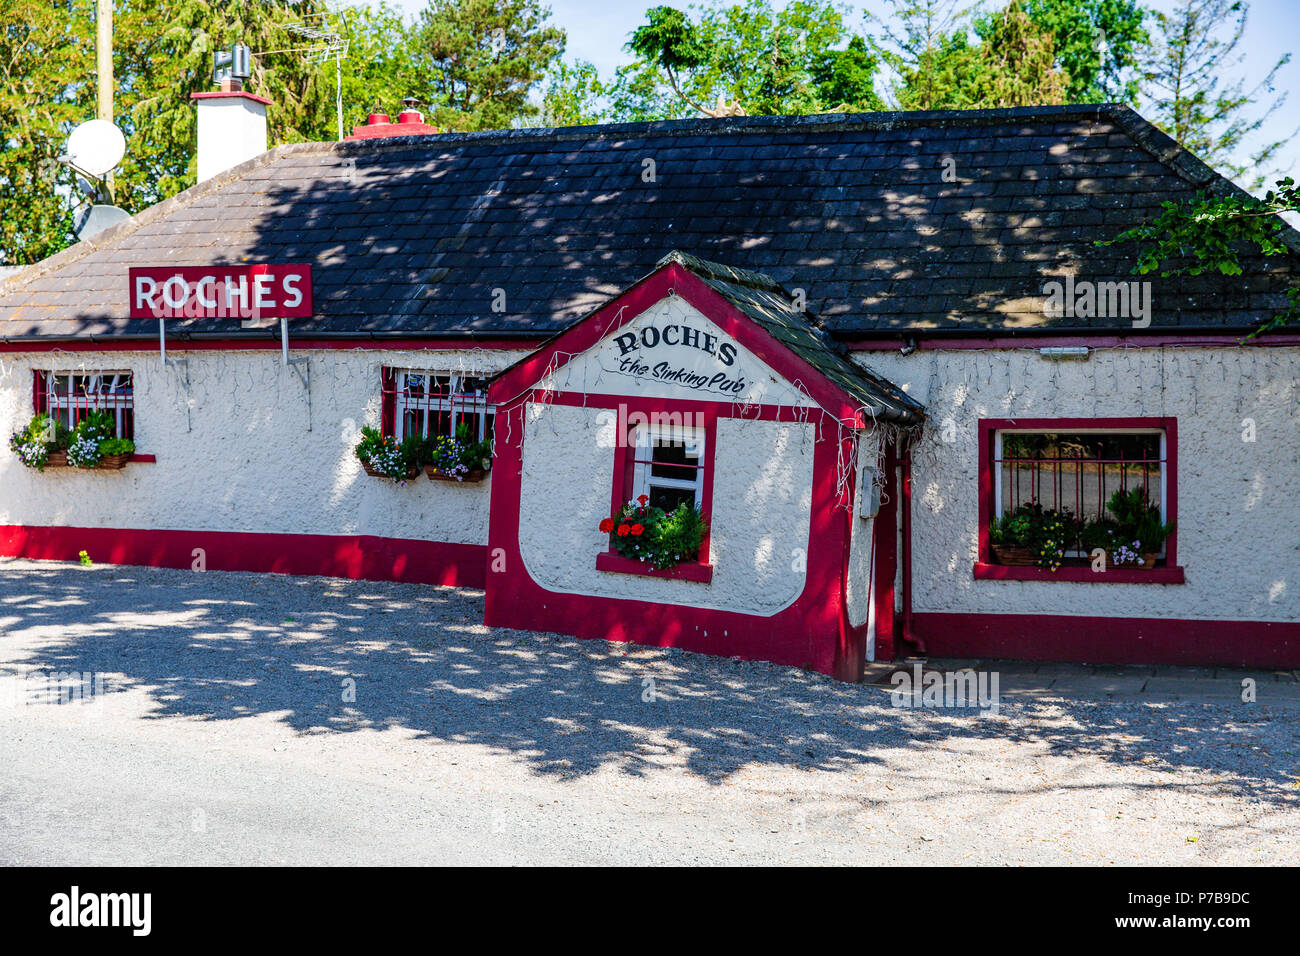 Irish Pub - Roches naufragio Pub in Donadea, nella contea di Kildare, Irlanda Foto Stock